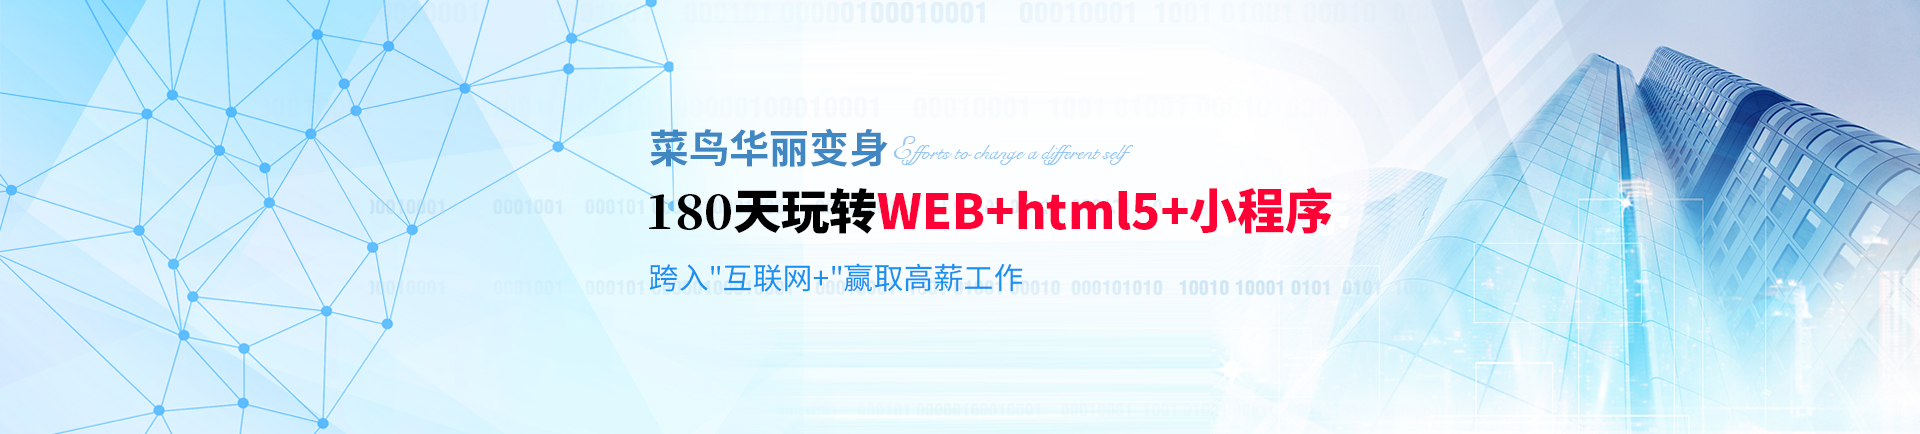 180天玩转WEB+html5+小程序 跨入互联网+挑战高薪-fuzhou